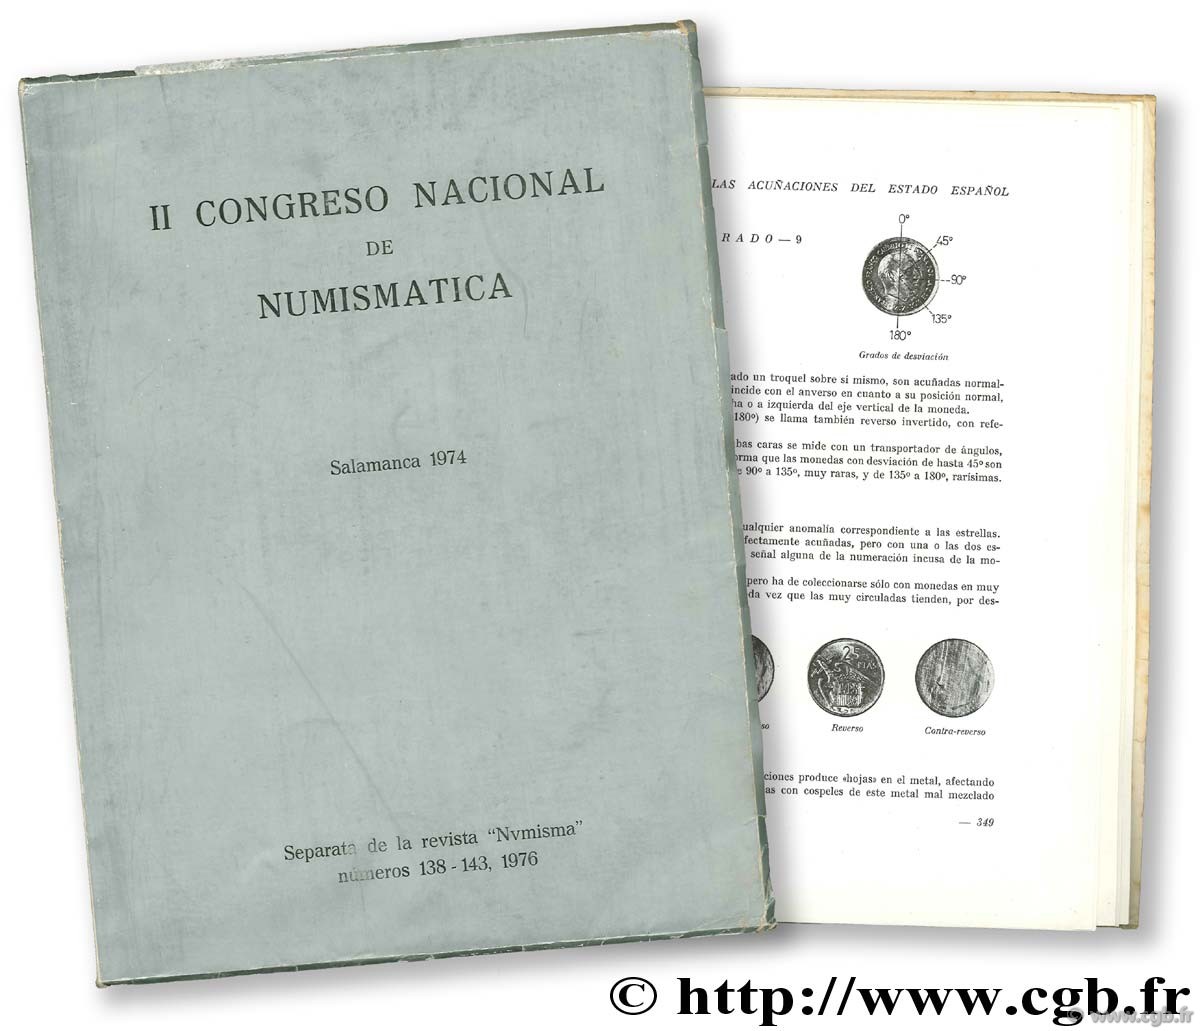 II Congreso Nacional de numismatica. Salamanca 1974 